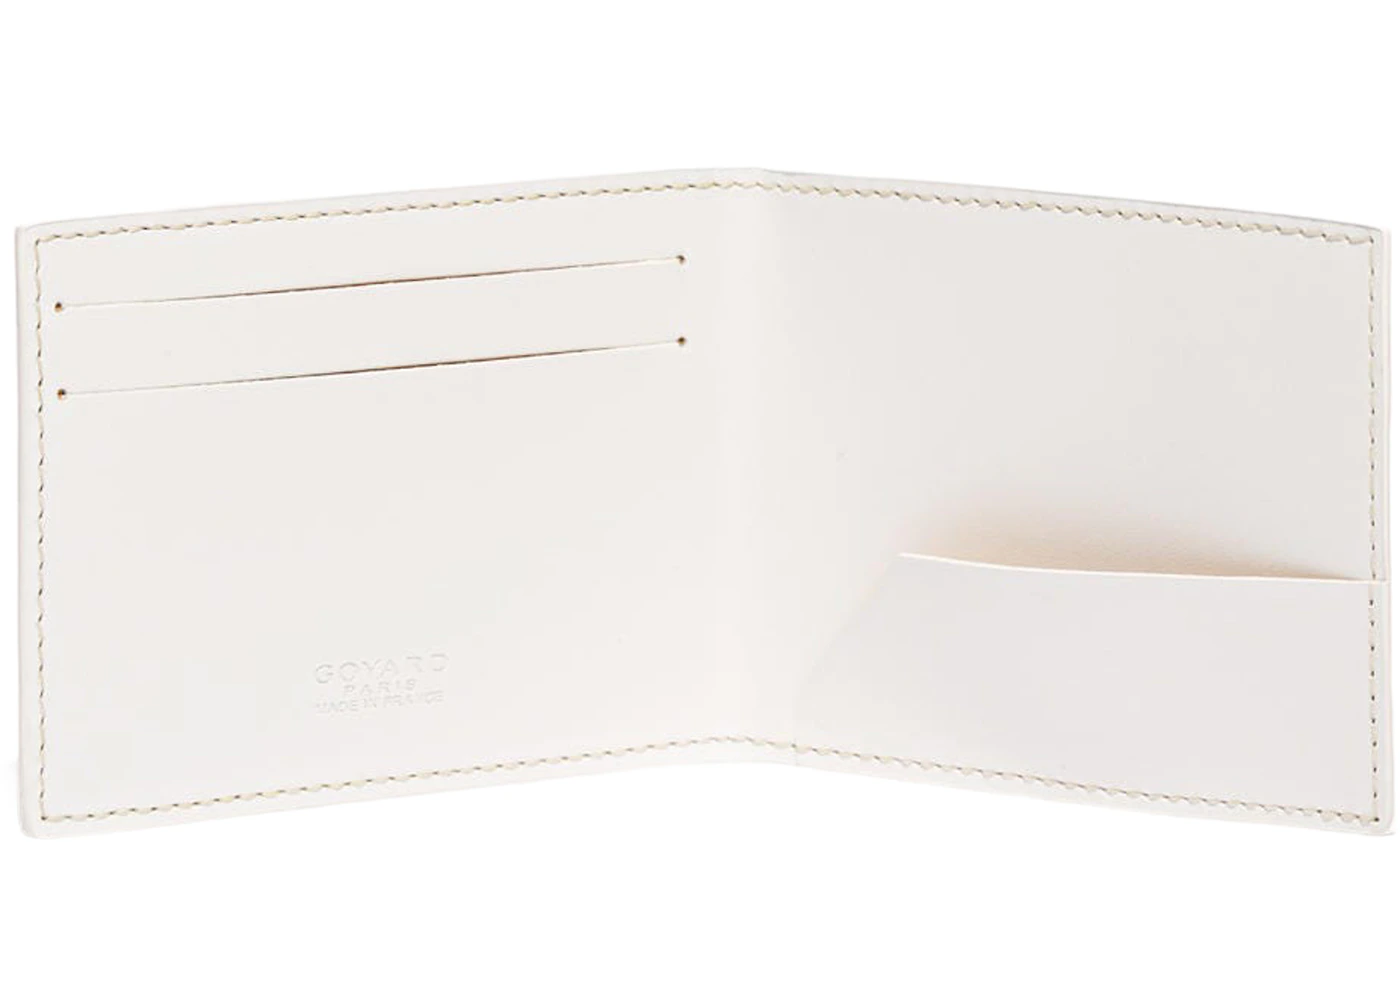 Goyard Victorie Insert Card Holder White in Canvas/Calfskin - US